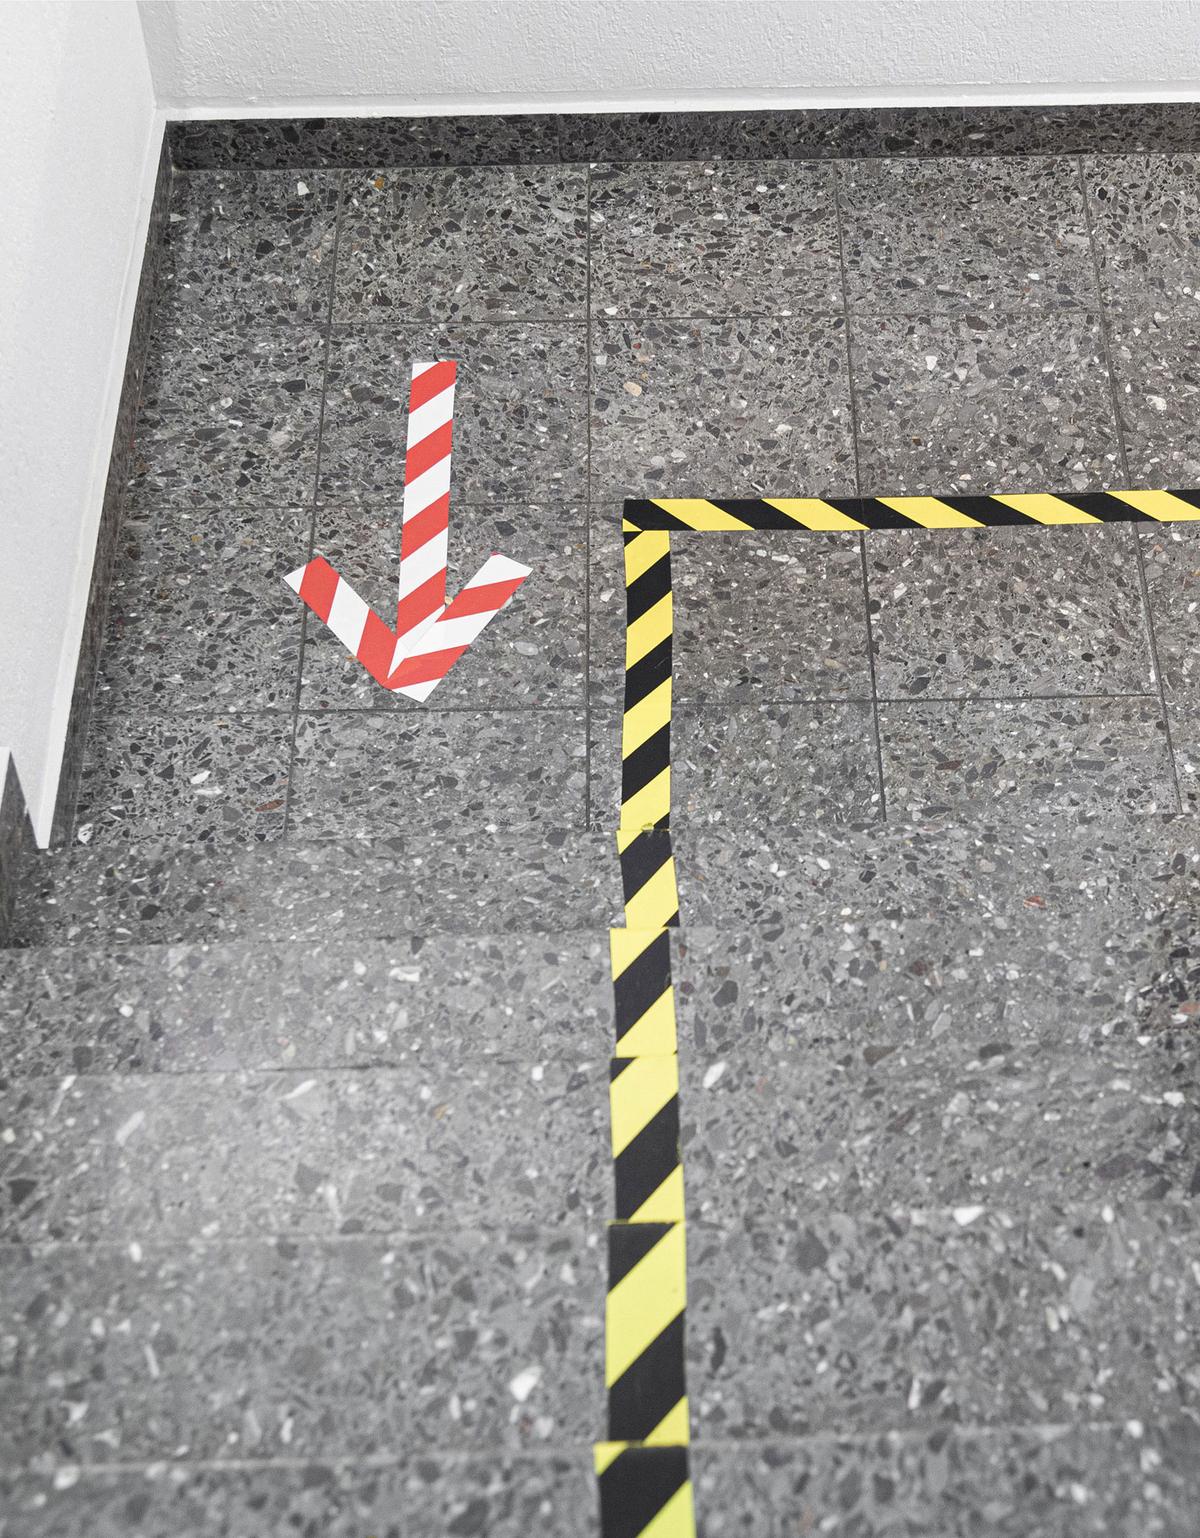 Öffnet eine Lightbox: Auf dem Boden wurden Laufwege mit schwarz-gelbem Klebeband abgeklebt und rot-weiße Pfeile zeigen die jeweilige Laufrichtung an. 